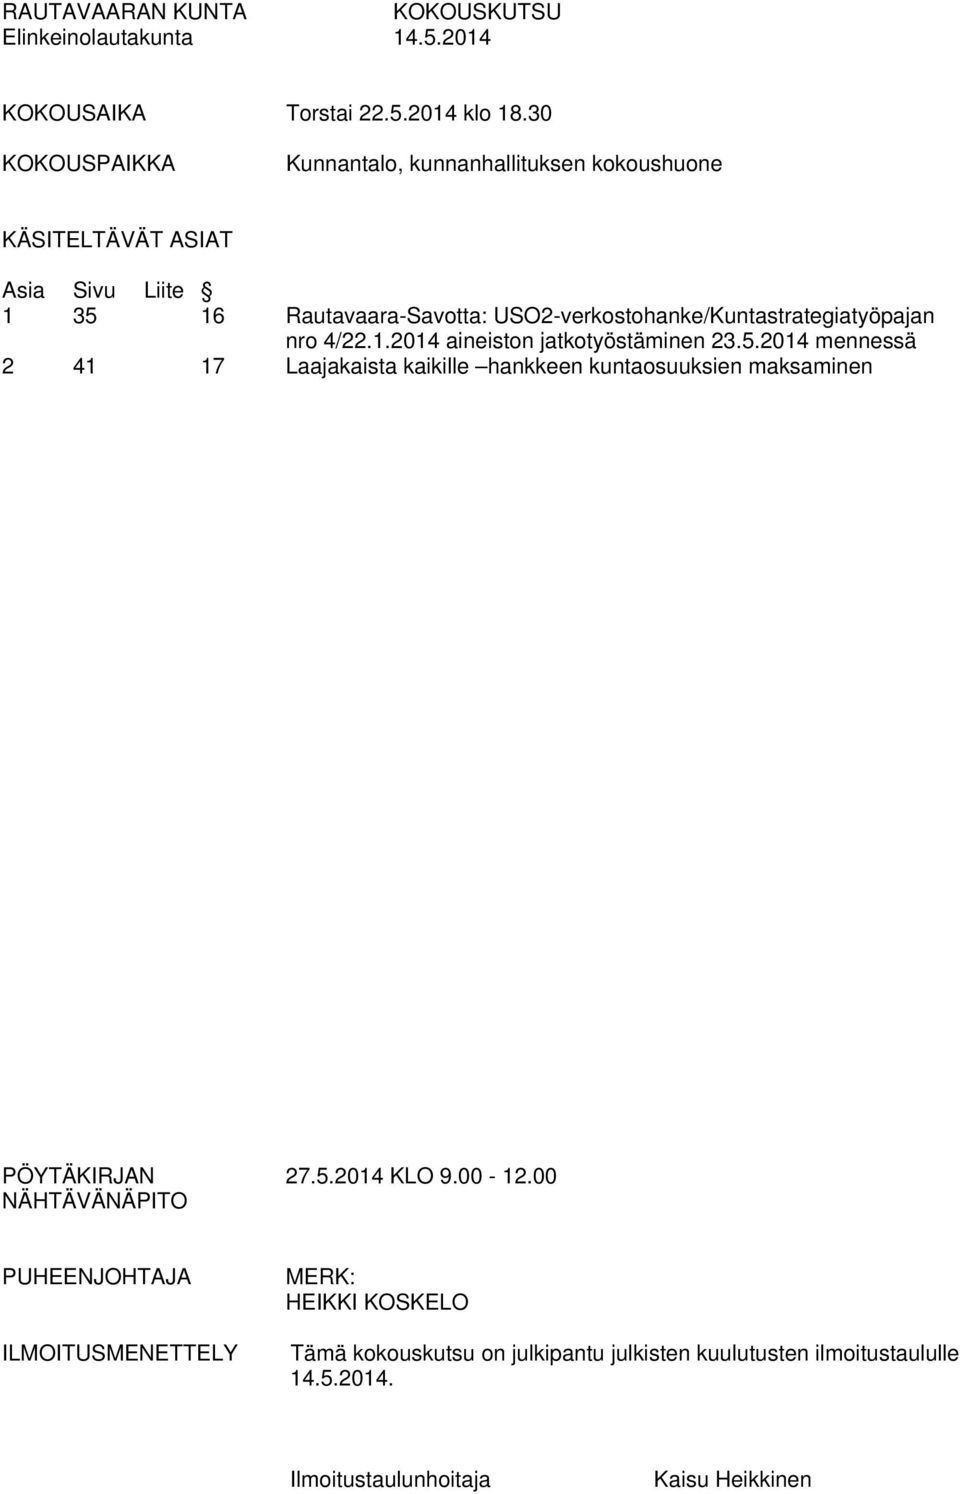 USO2-verkostohanke/Kuntastrategiatyöpajan nro 4/22.1.2014 aineiston jatkotyöstäminen 23.5.